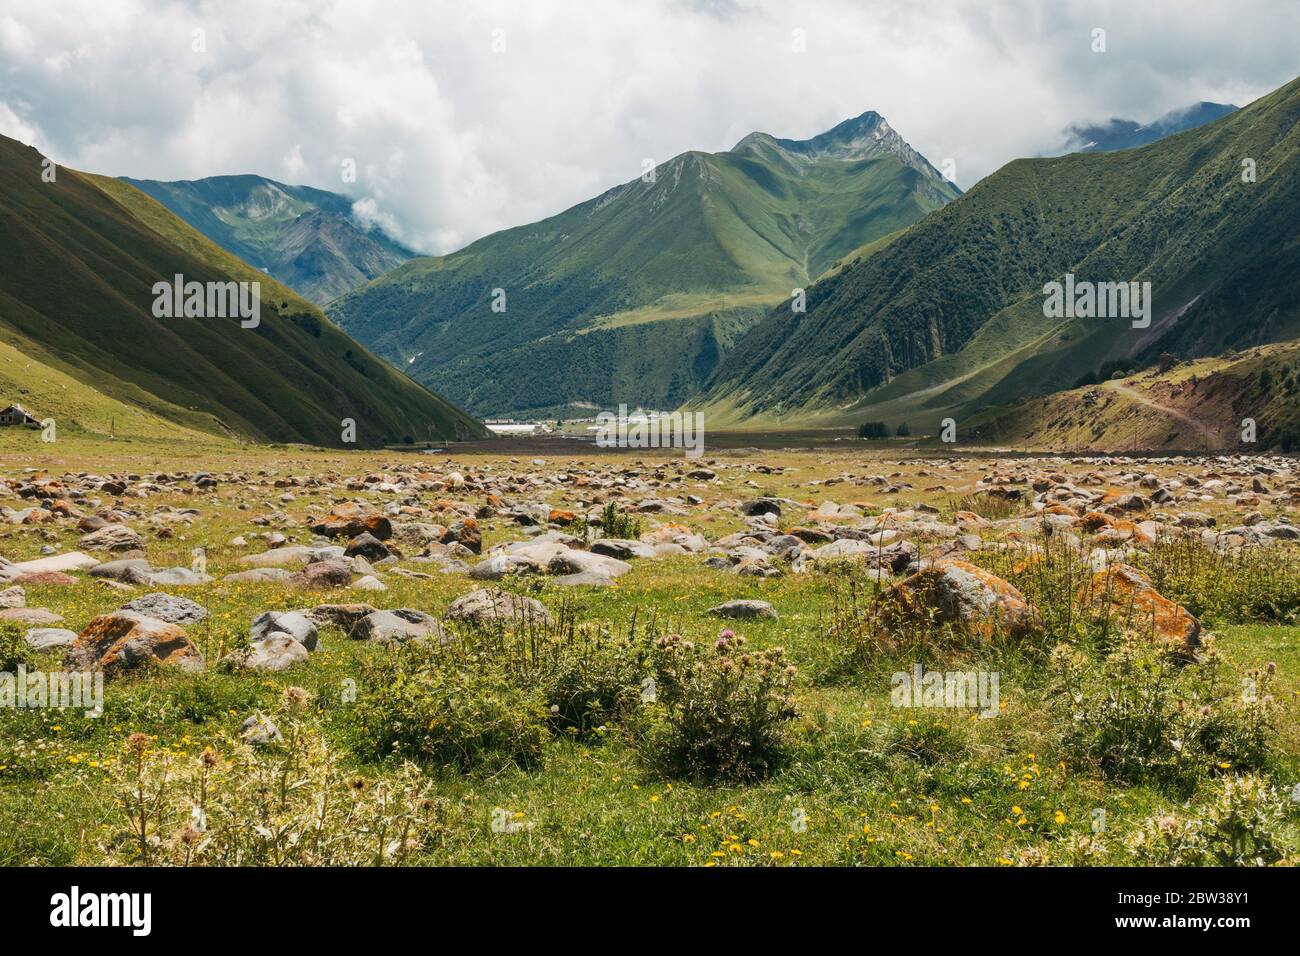 Blick auf ein bergiges Tal in der Region Kazbegi, Georgien Stockfoto